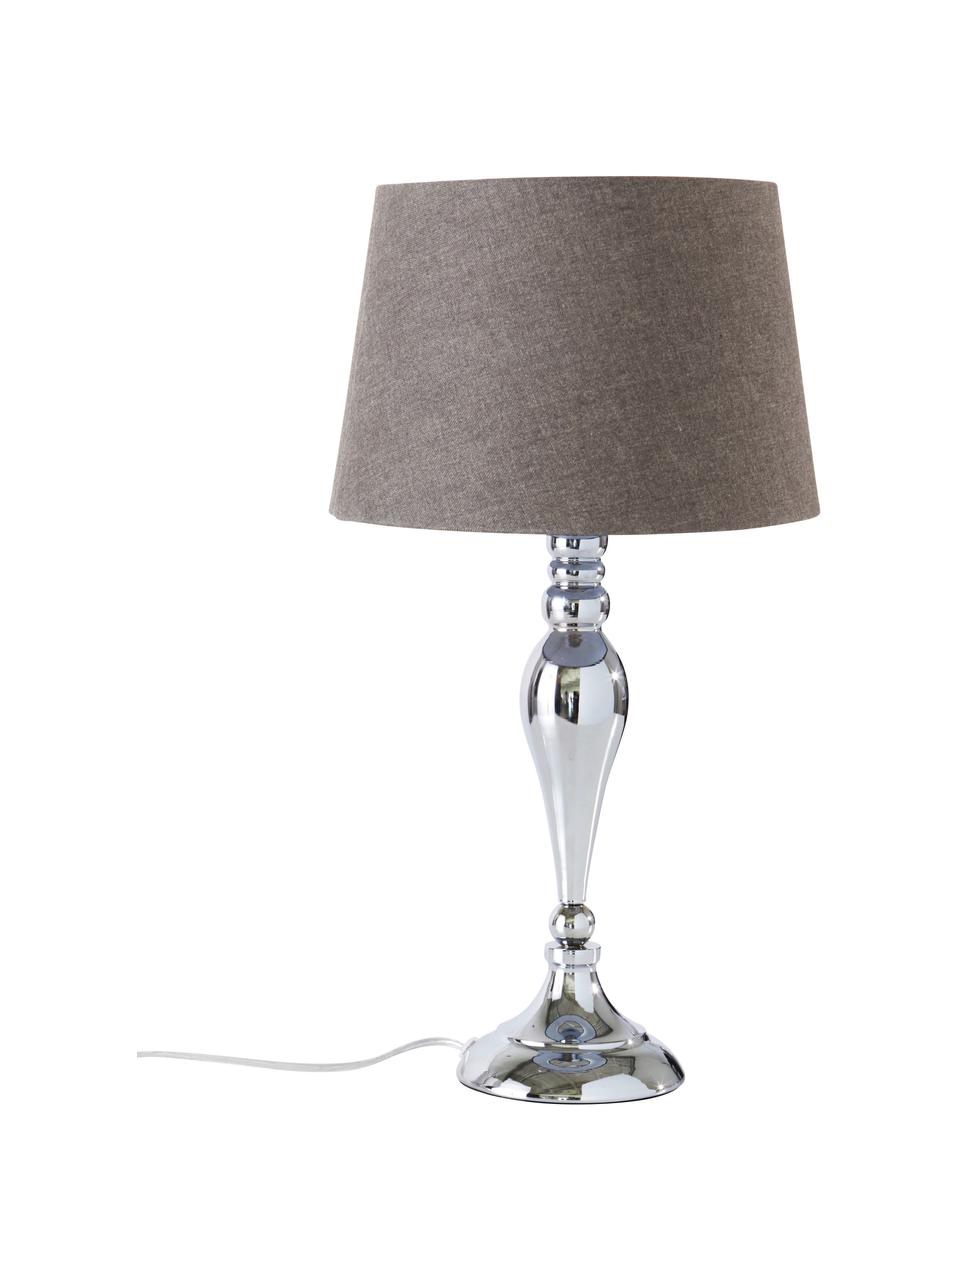 Große Tischlampe Brighton in Chrom, Lampenschirm: Baumwolle, Lampenfuß: Metall, lackiert, Grau, Chromfarben, Ø 25 x H 52 cm